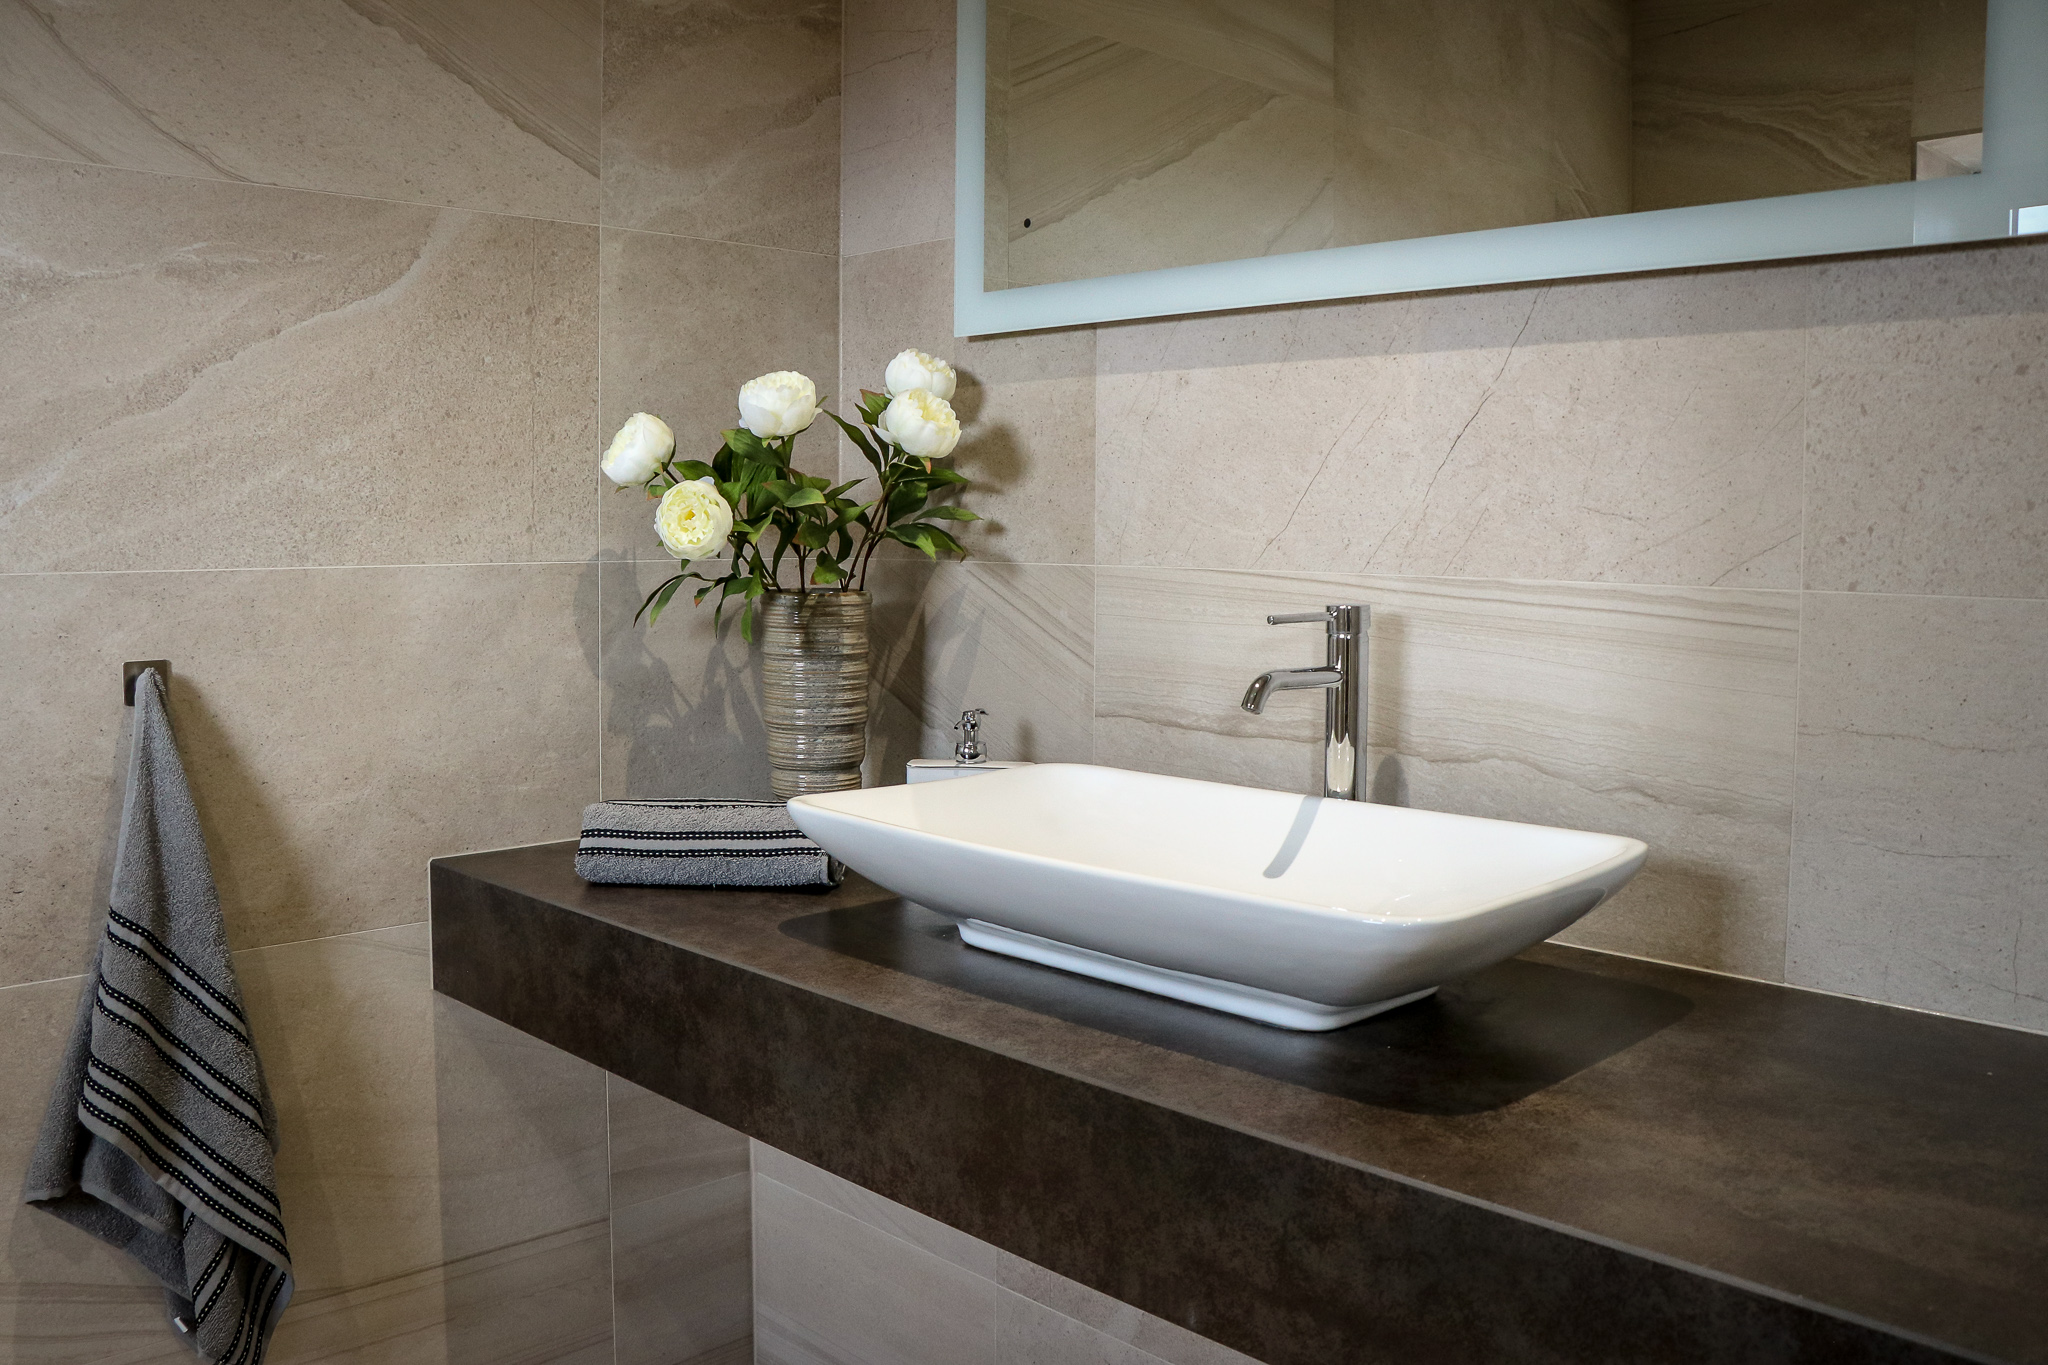 Bàn đá lavabo được thiết kế với nhiều kích thước khác nhau nhằm phù hợp với diện tích phòng tắm